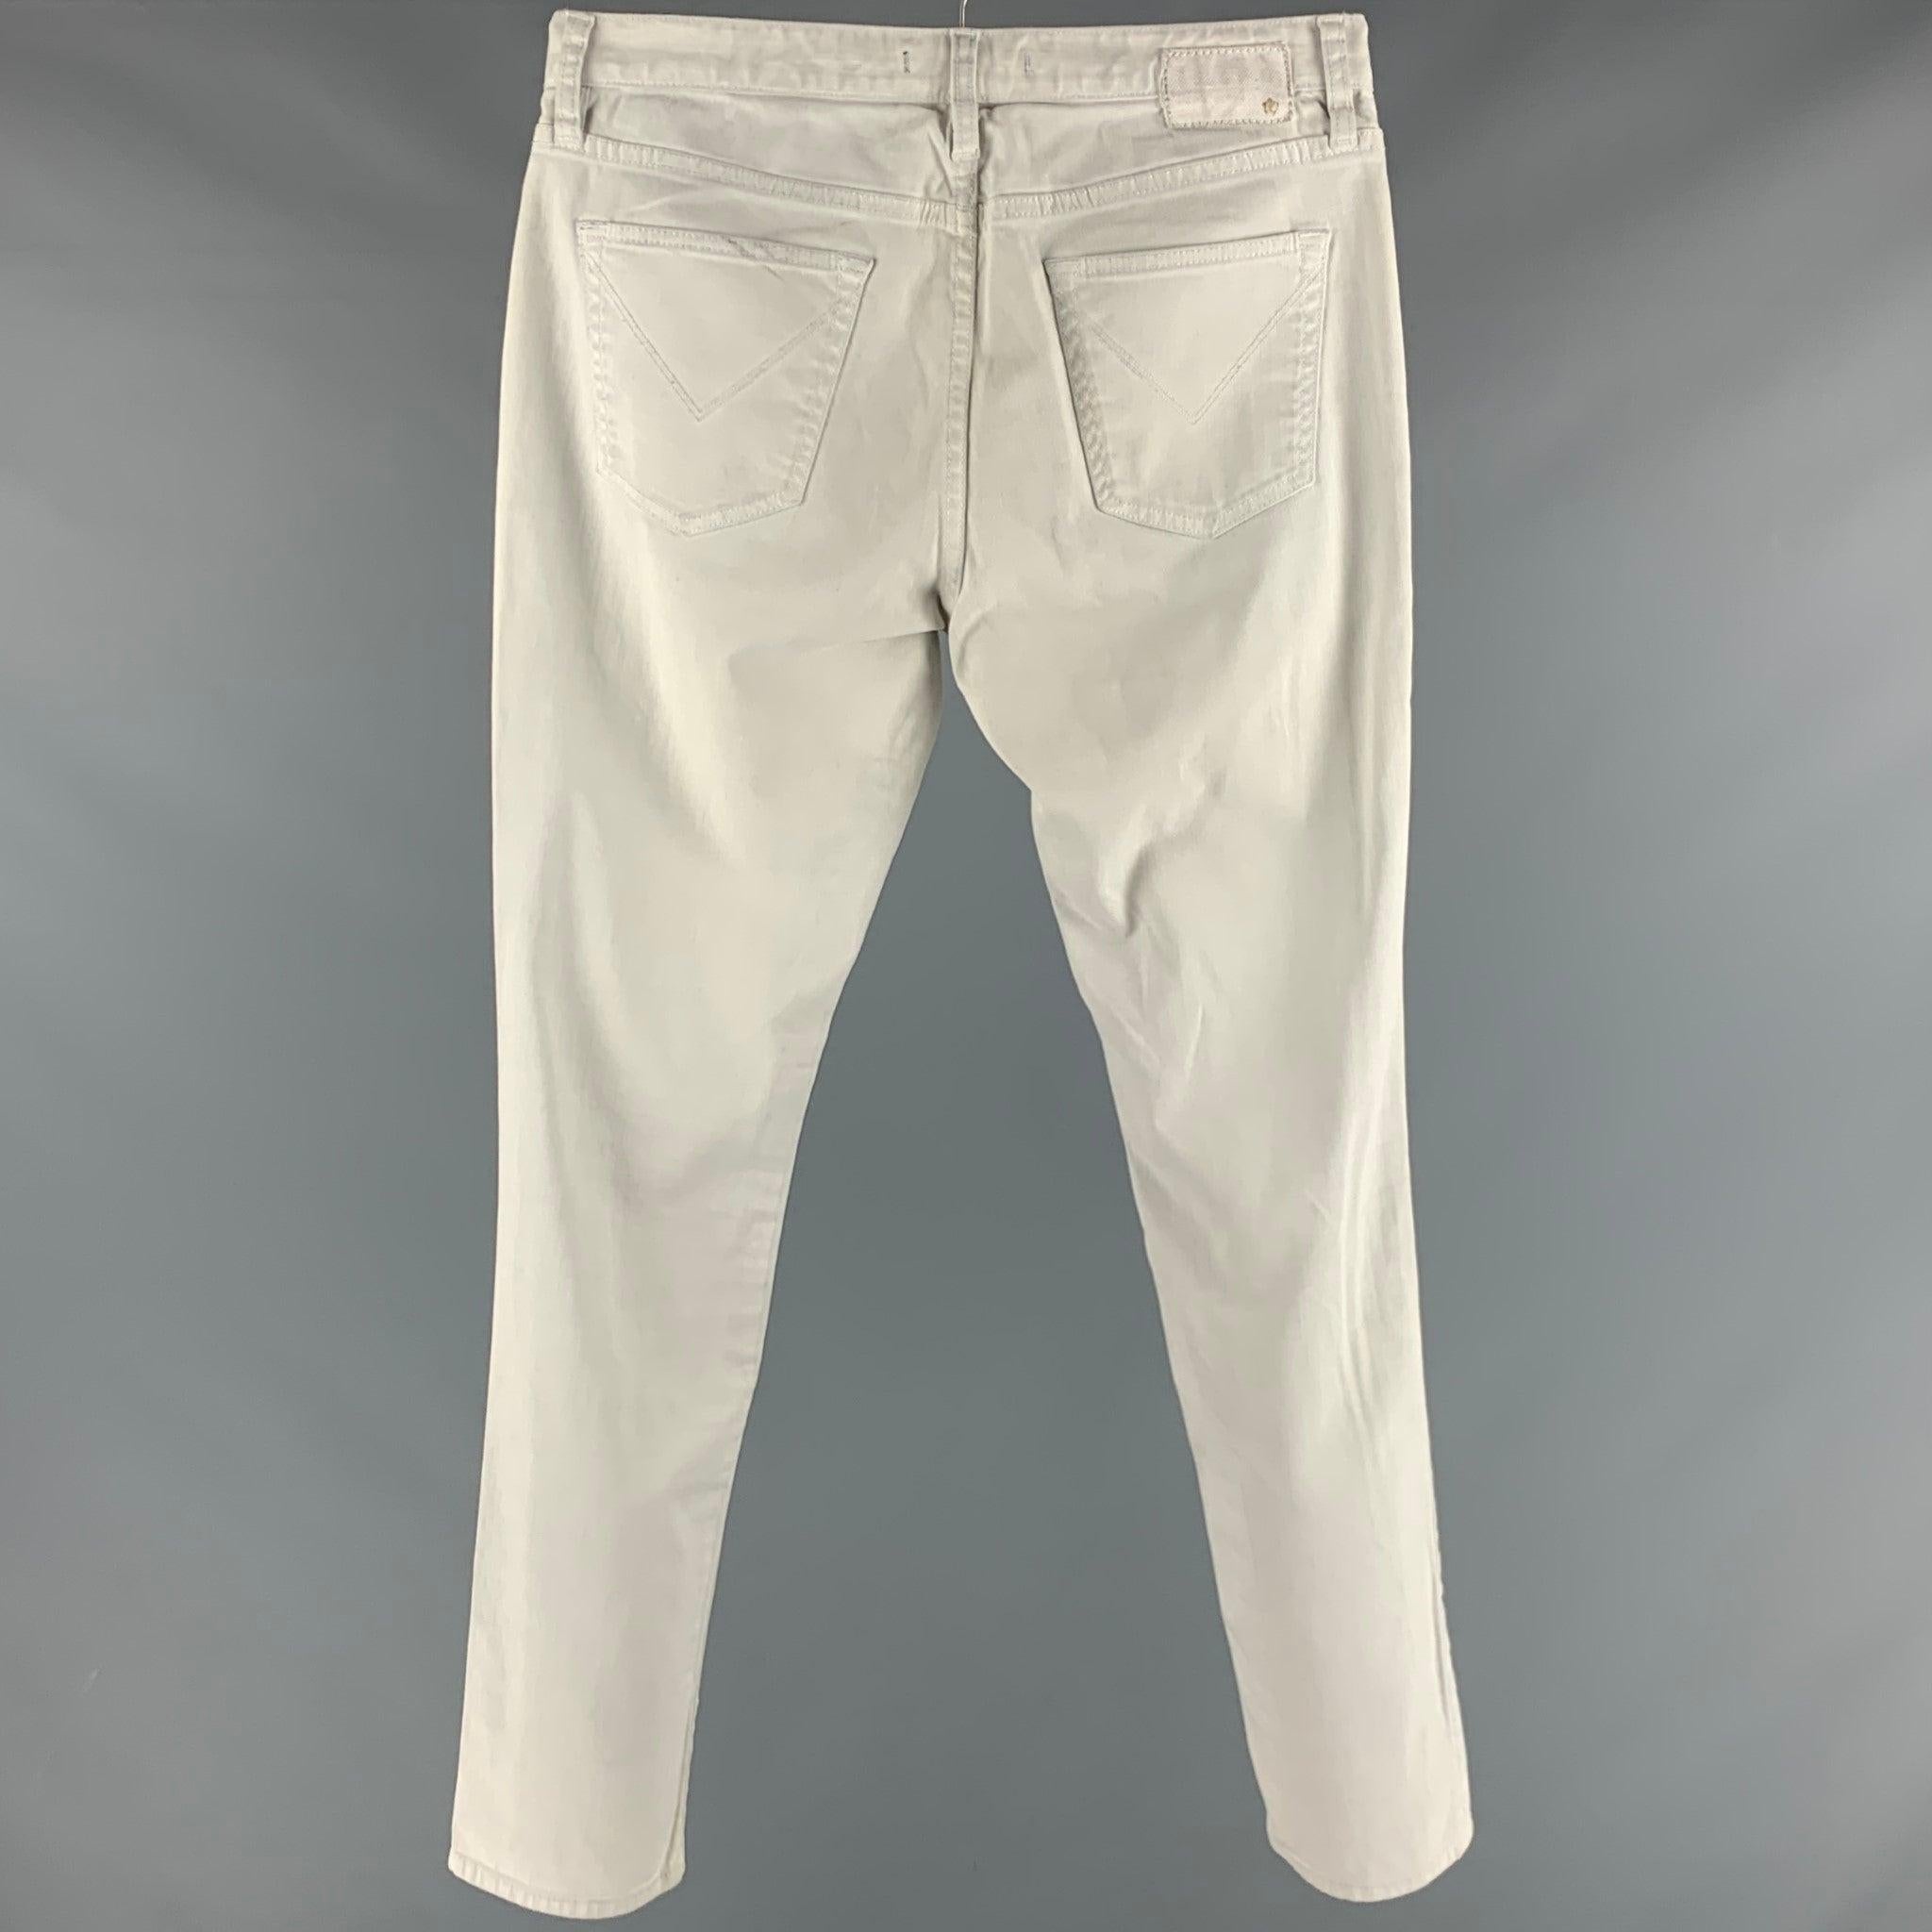 JOHN VARVATOS * U.S.A. Jeans
aus hellblauem Baumwollgemisch mit Nietenbesatz an den Seiten, fünf Taschen und Schlitz mit Knopfverschluss. Mäßige Gebrauchsspuren. 

Markiert:   31 

Abmessungen: 
  Taille: 31 Zoll Steigung: 8 Zoll Innennaht: 33 Zoll